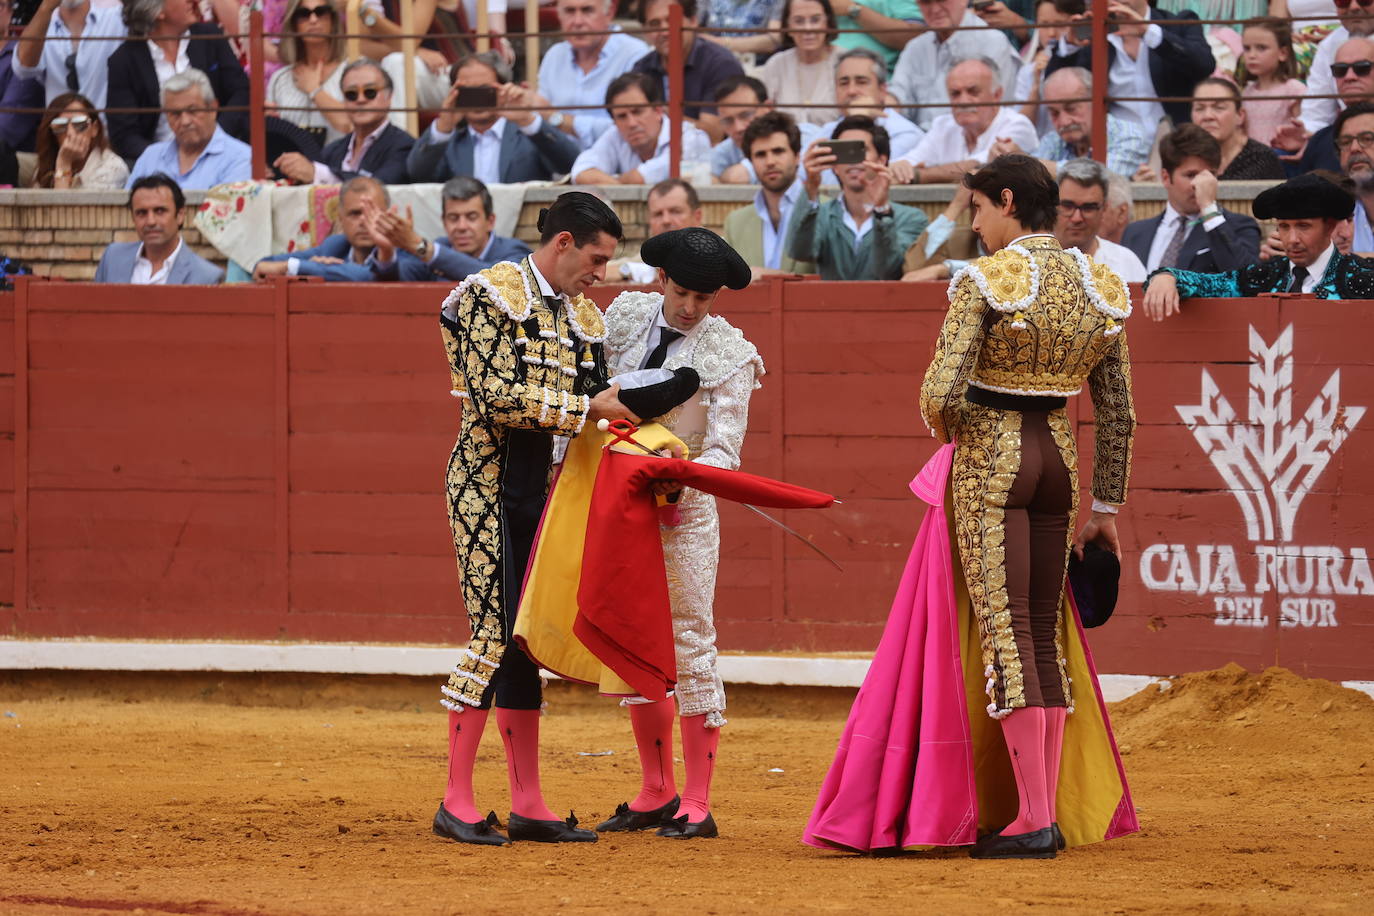 El gran triunfo de Roca Rey y Lagartijo en Córdoba, en imágenes